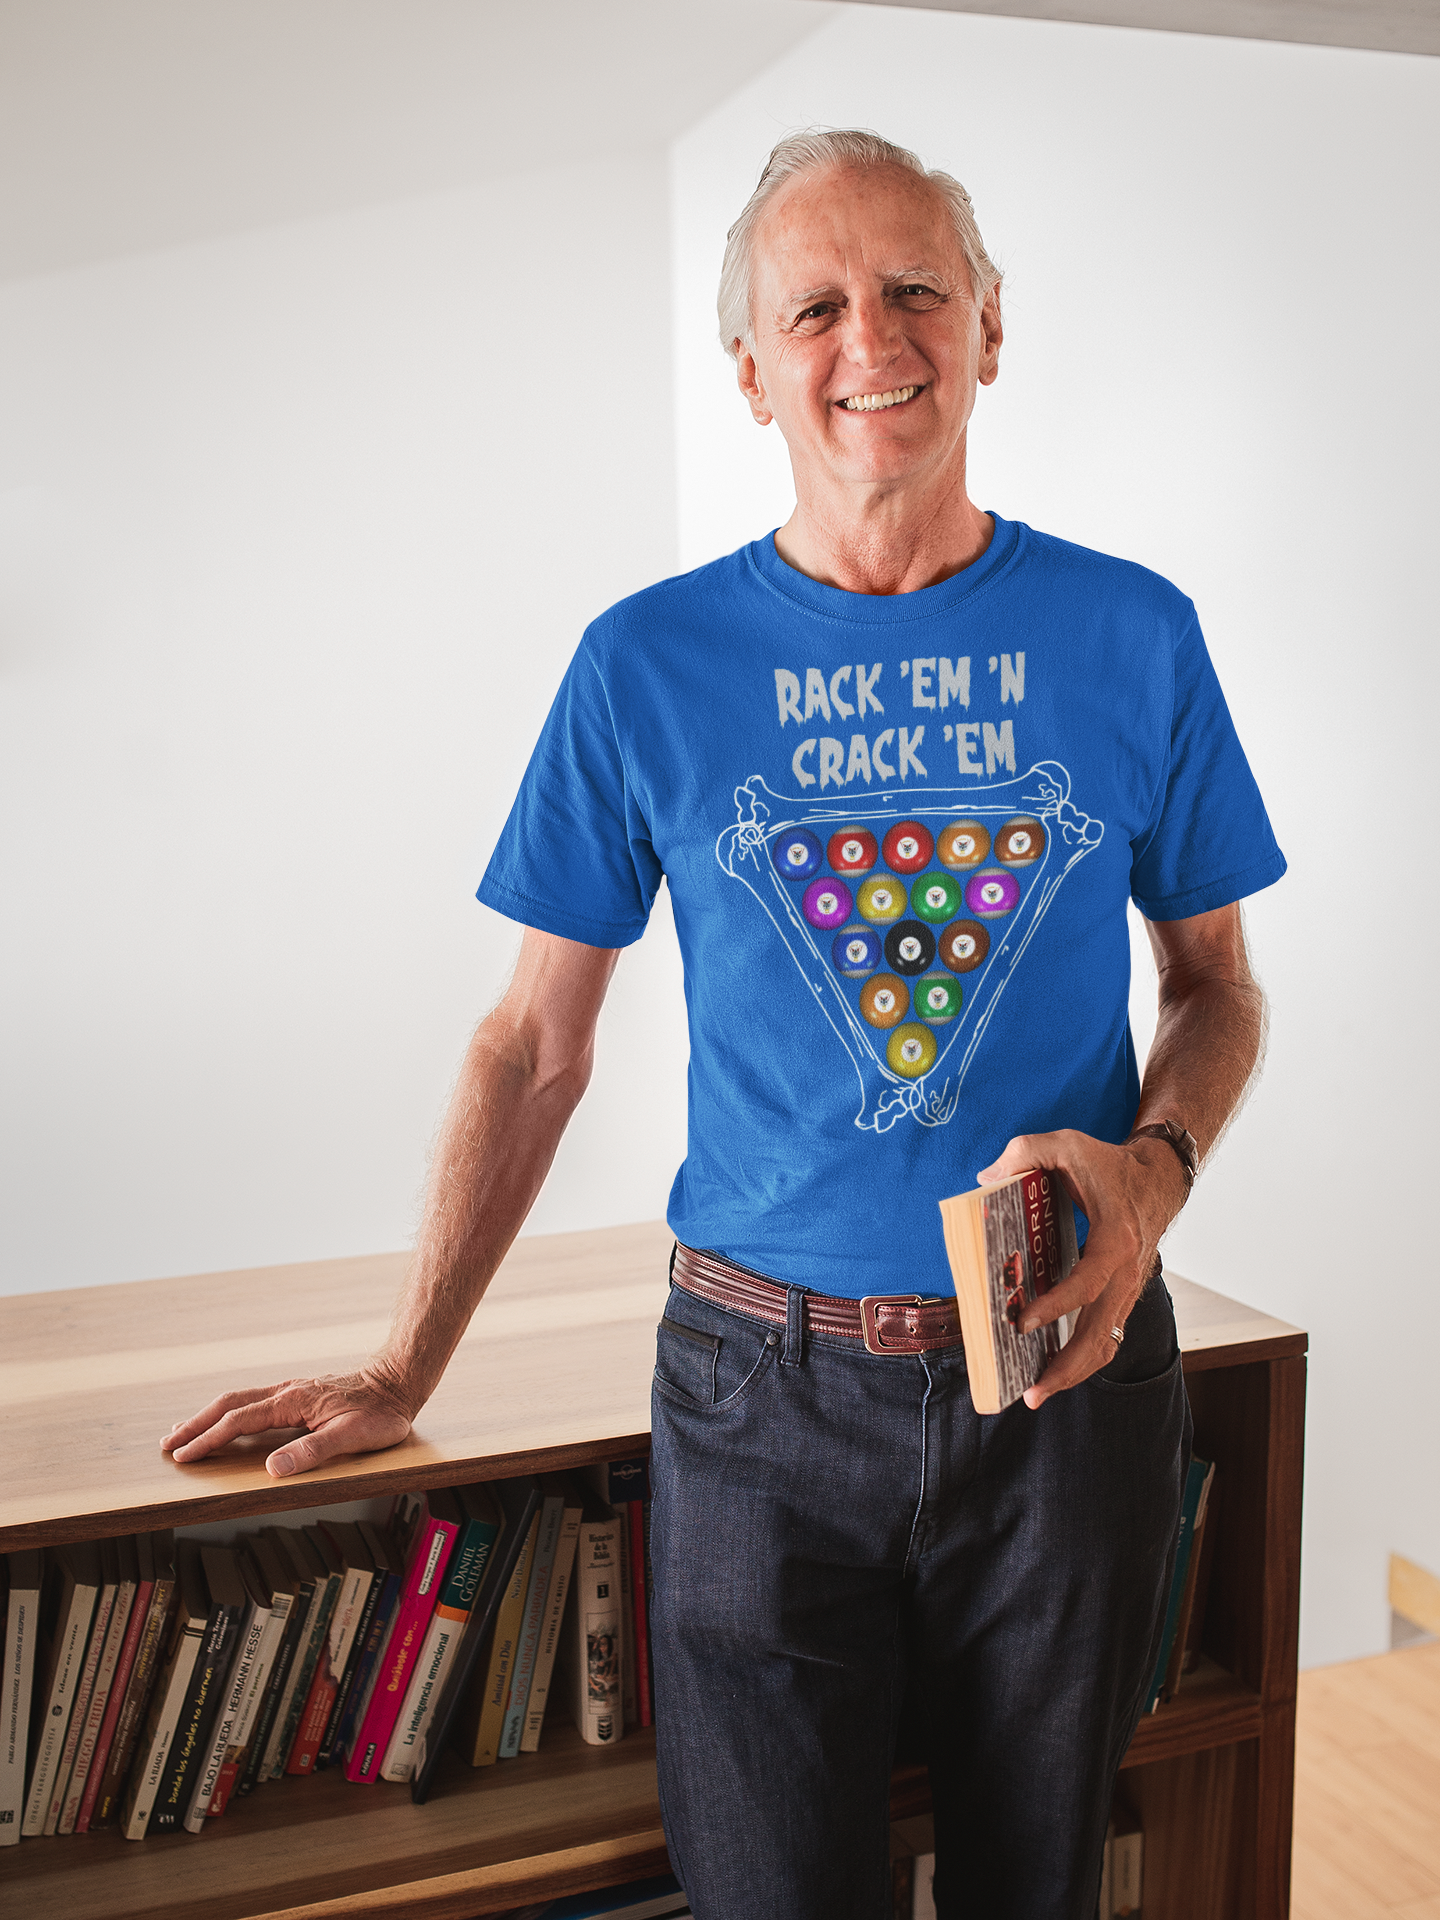 Rack 'Em 'N Crack 'Em, on front of the shirt, Tri-blend T-shirt